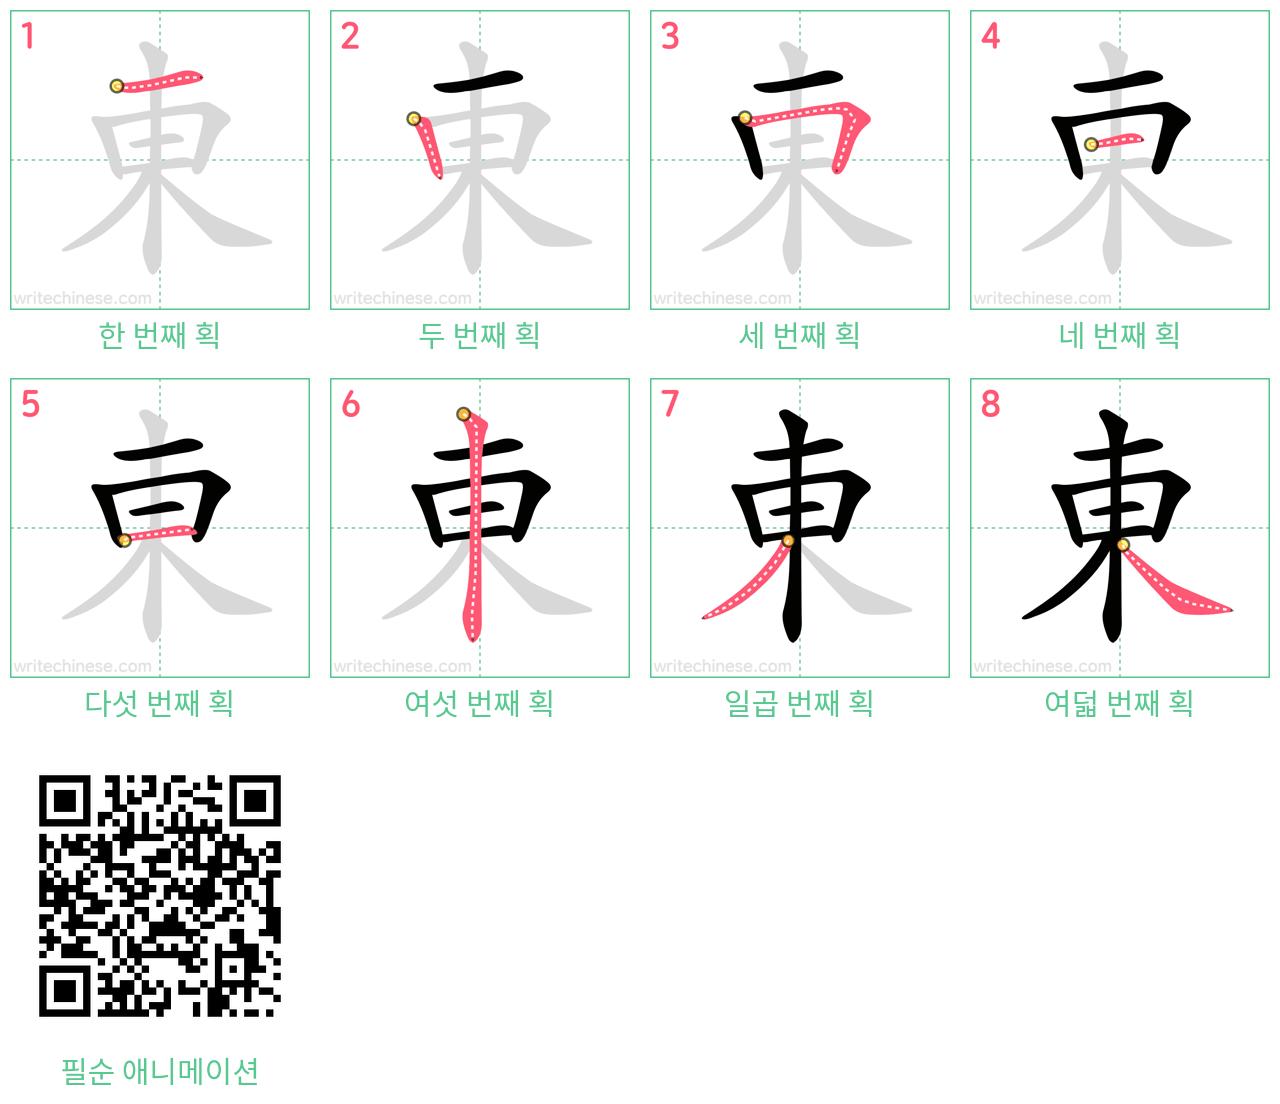 東 step-by-step stroke order diagrams